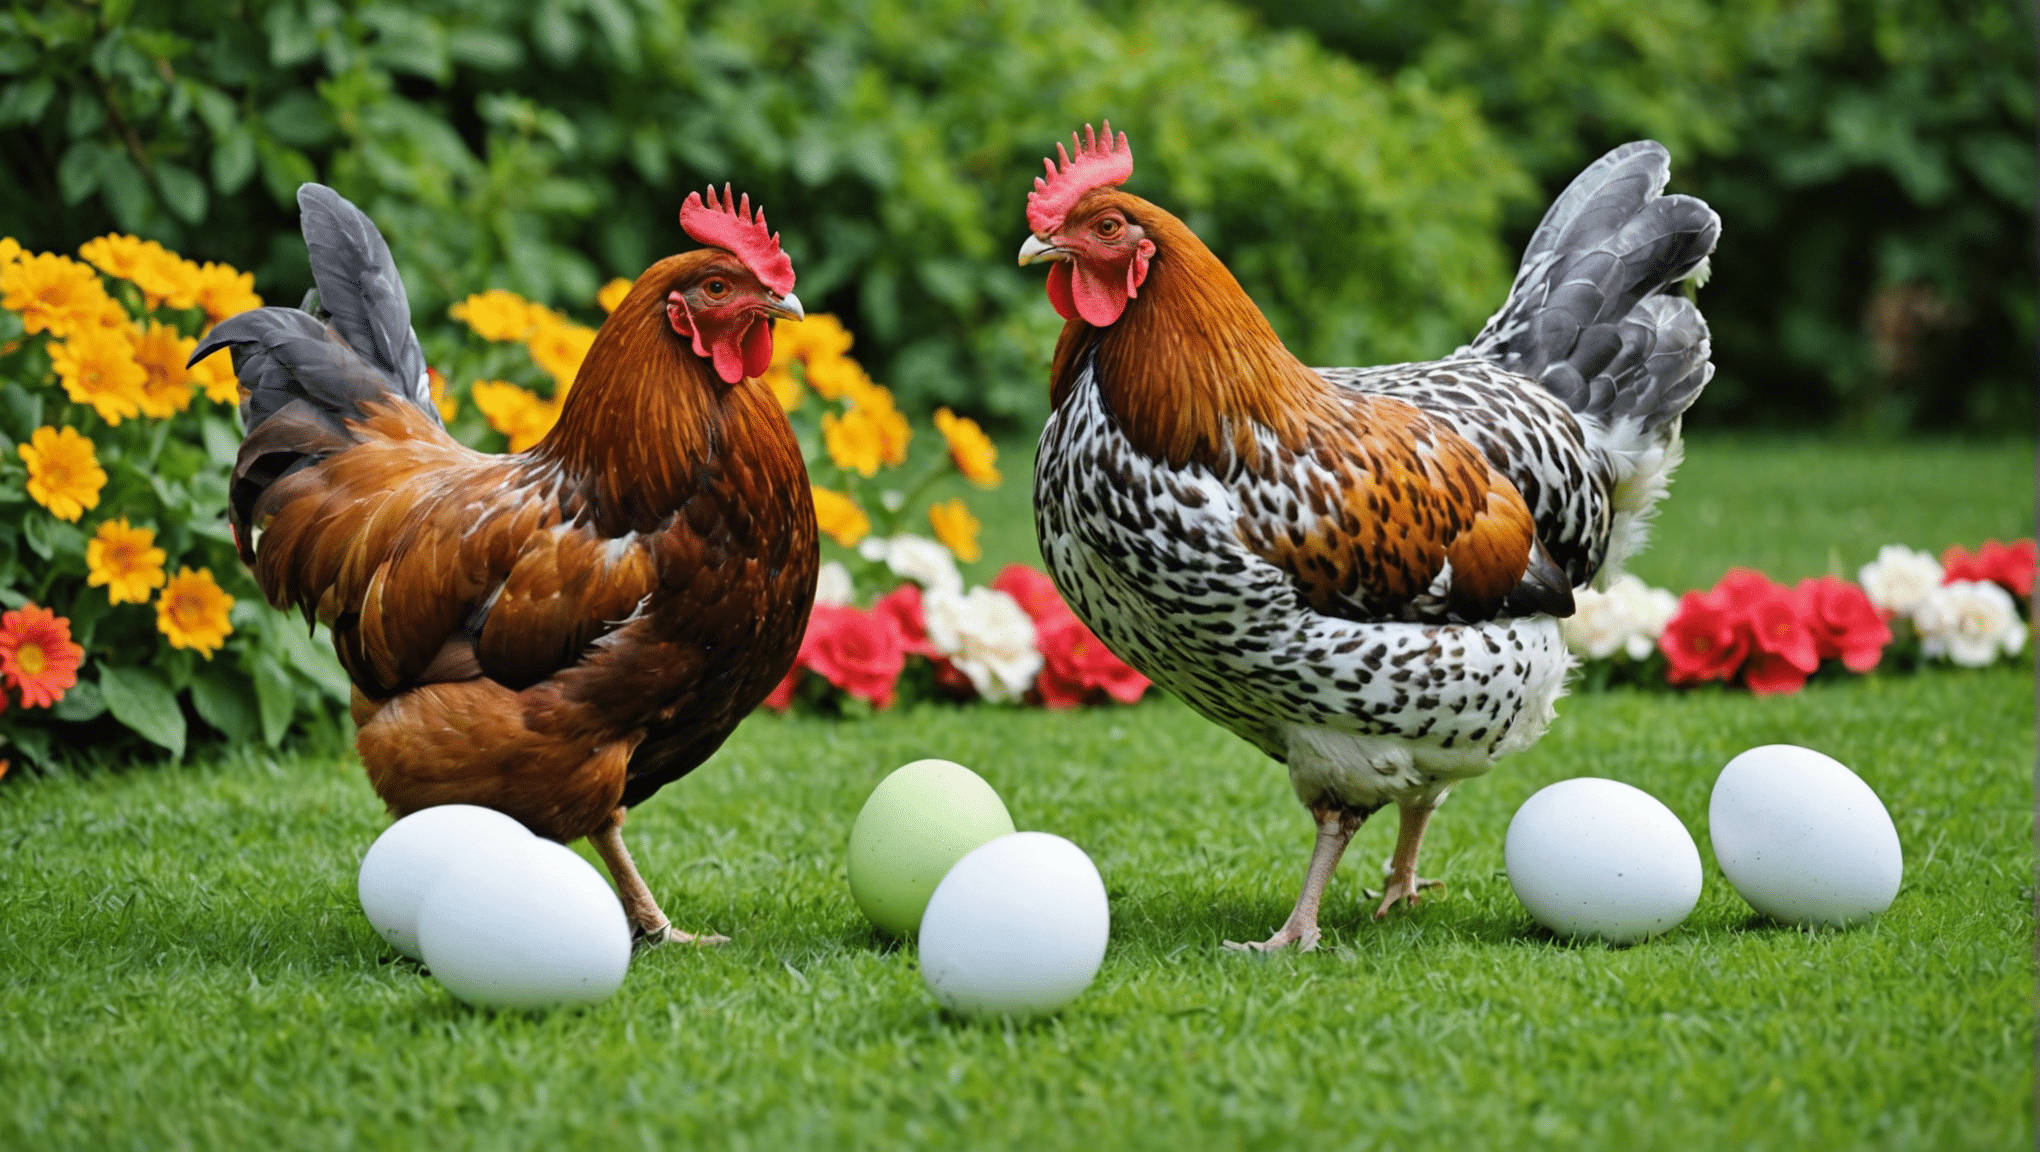 さまざまな鶏の品種の産卵時期と、それぞれの鶏の産卵における独特のパターンについて学びます。